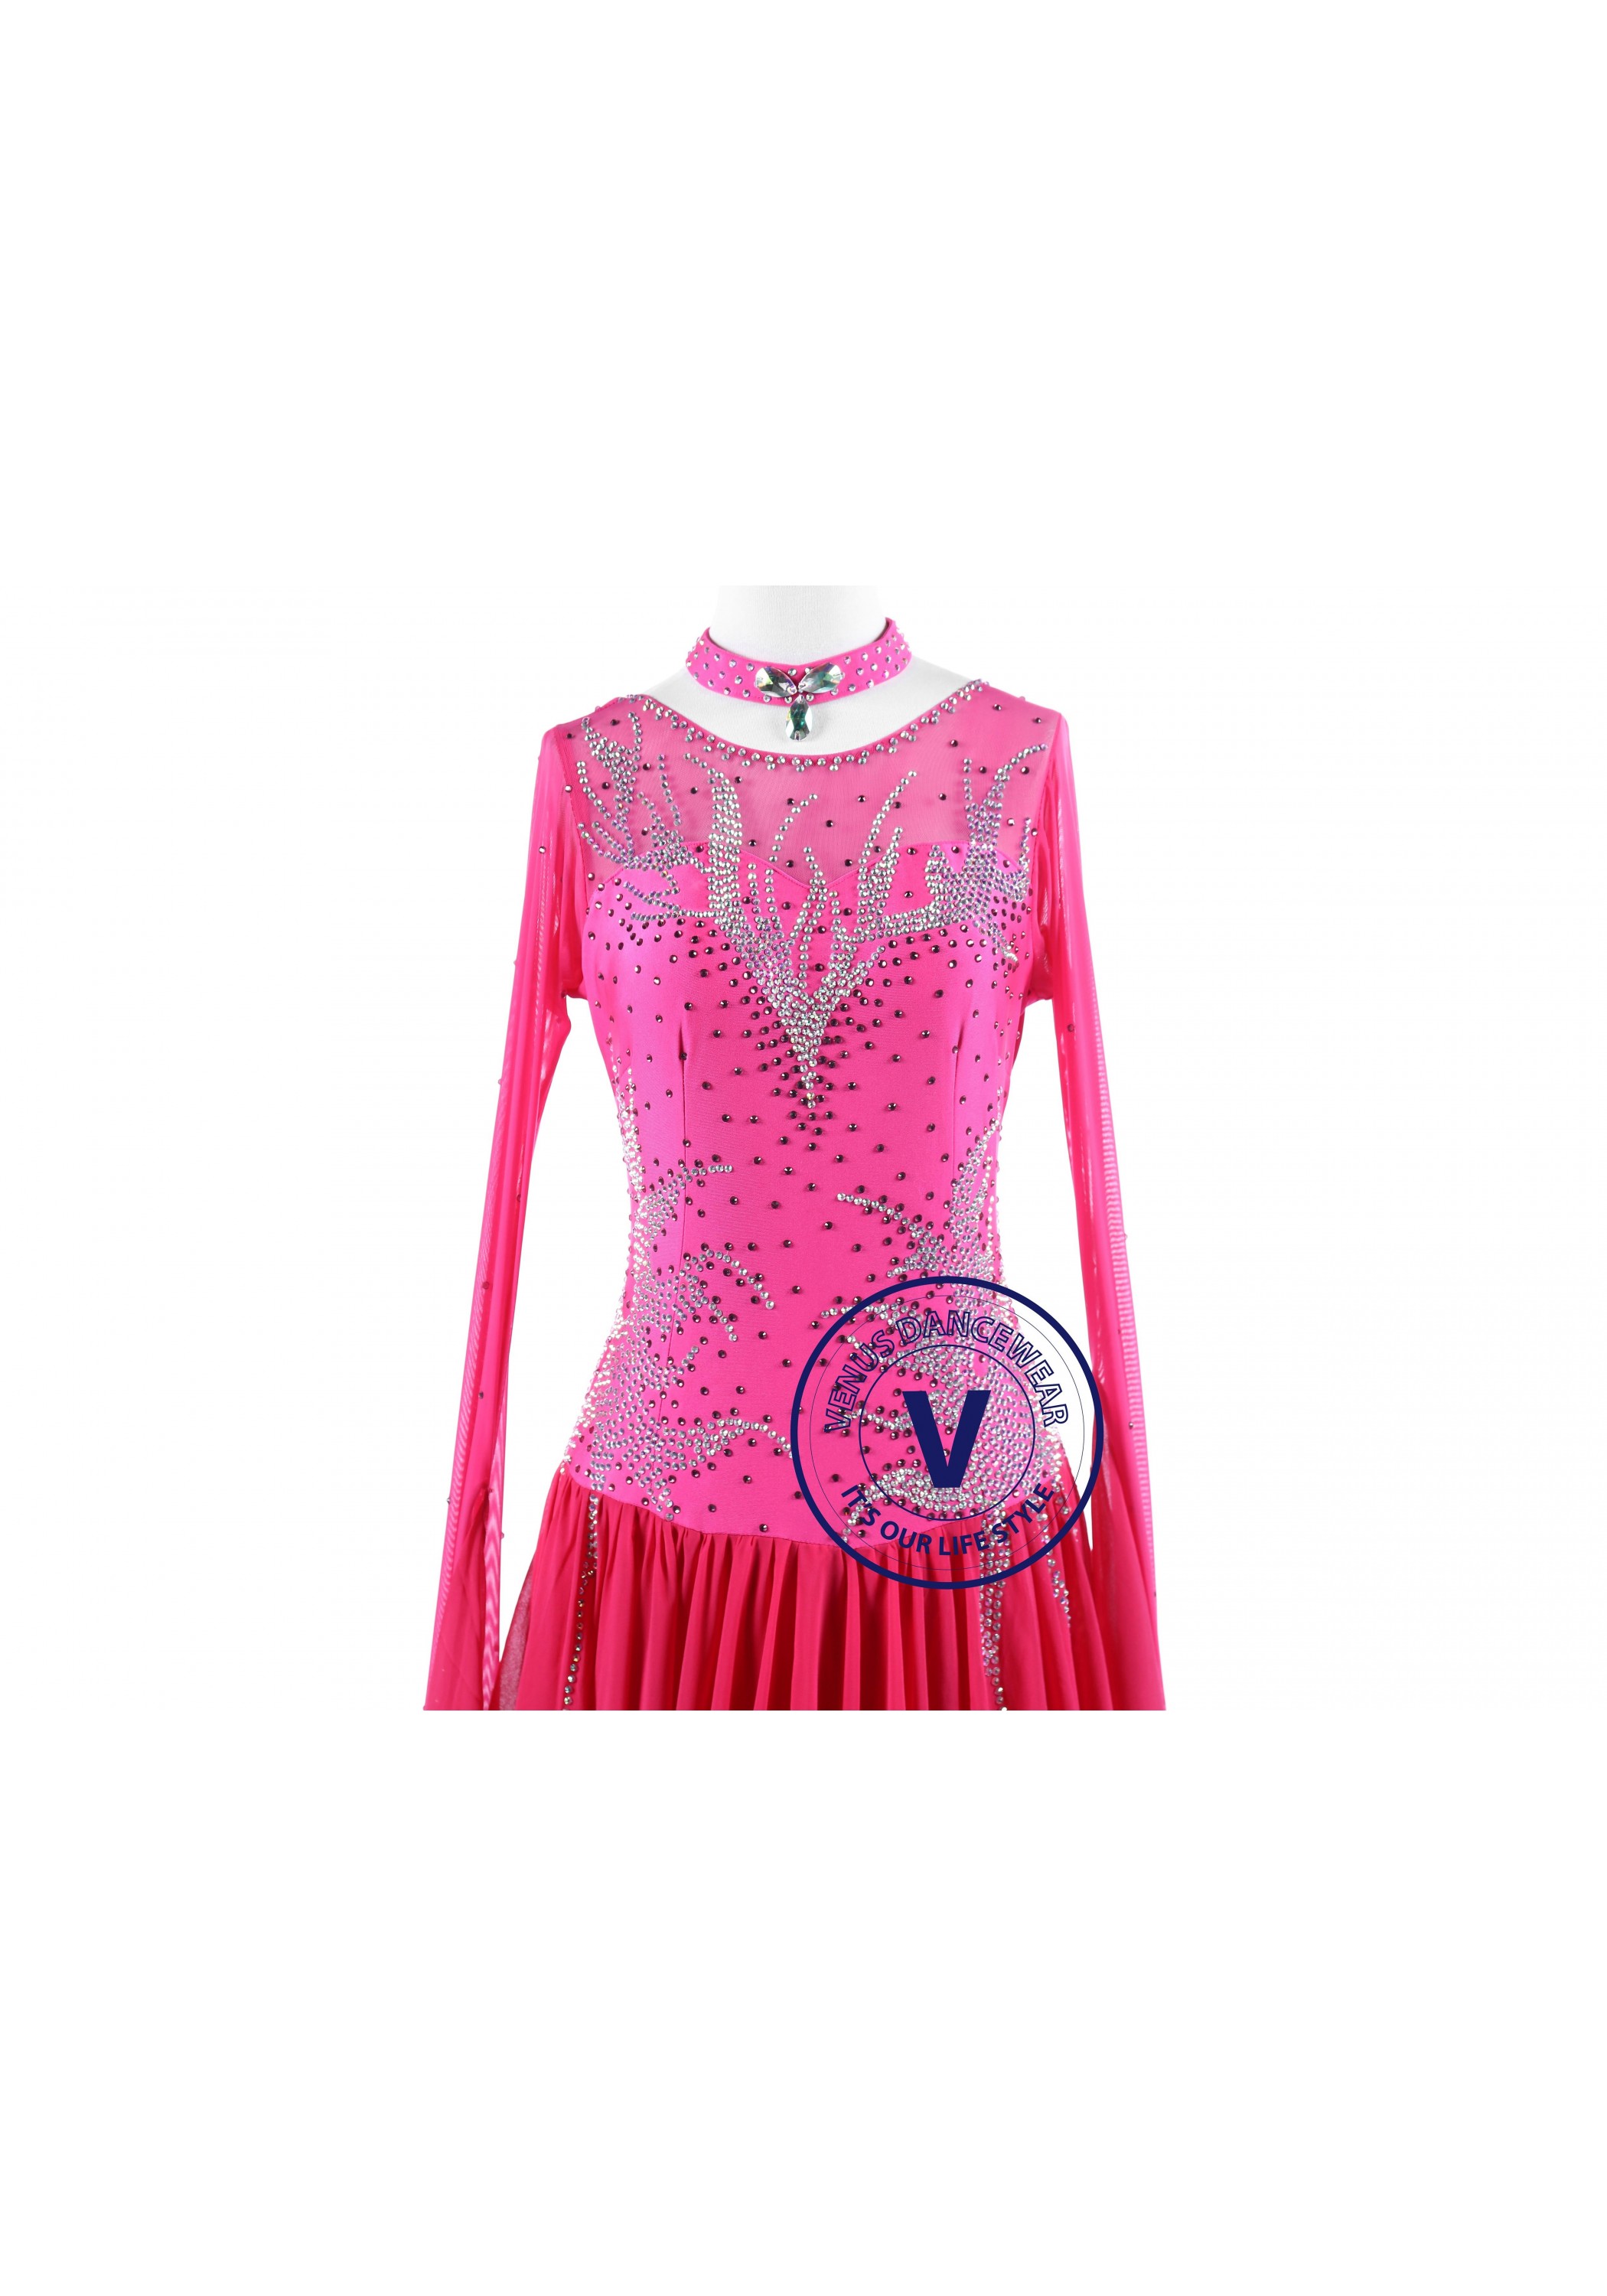 Pink Ice Standard Smooth Foxtrot Waltz Quickstep Dress